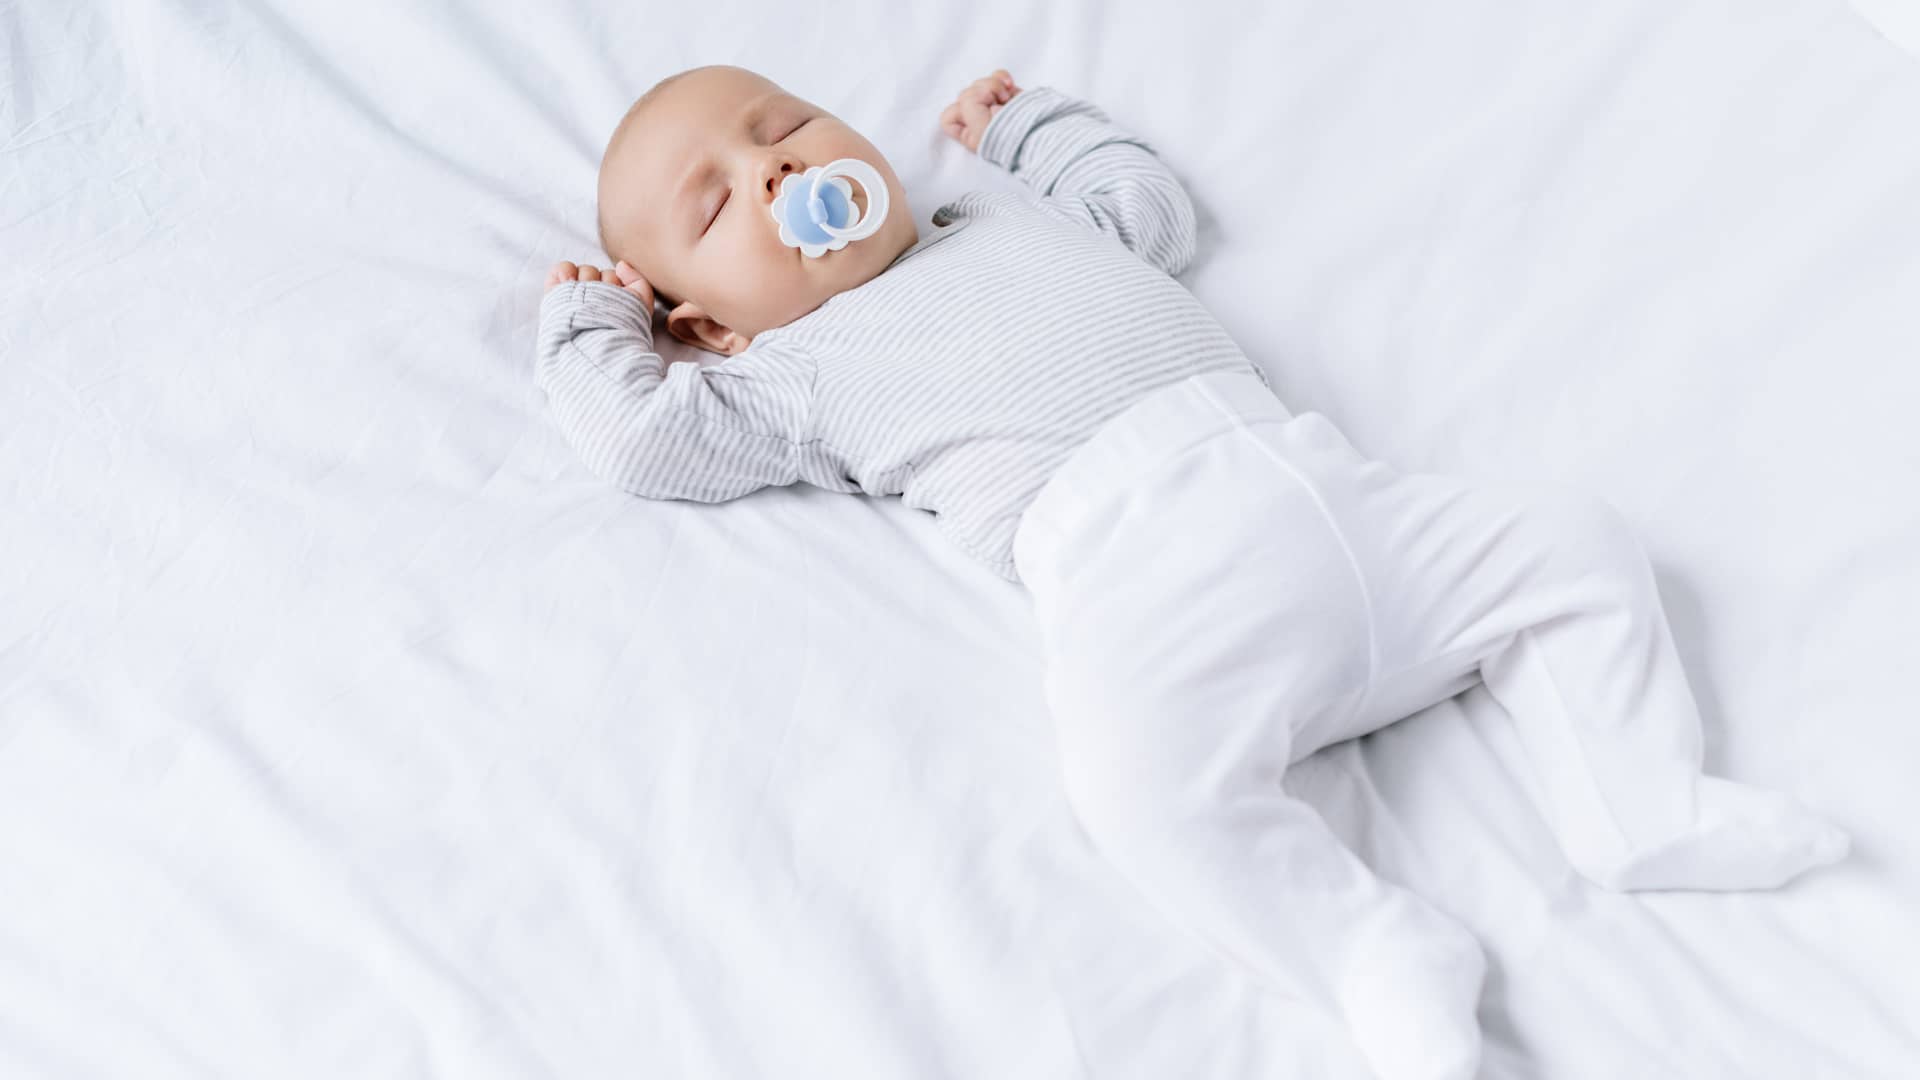 Dormir al bebé boca abajo: ¿cuándo pueden hacerlo?